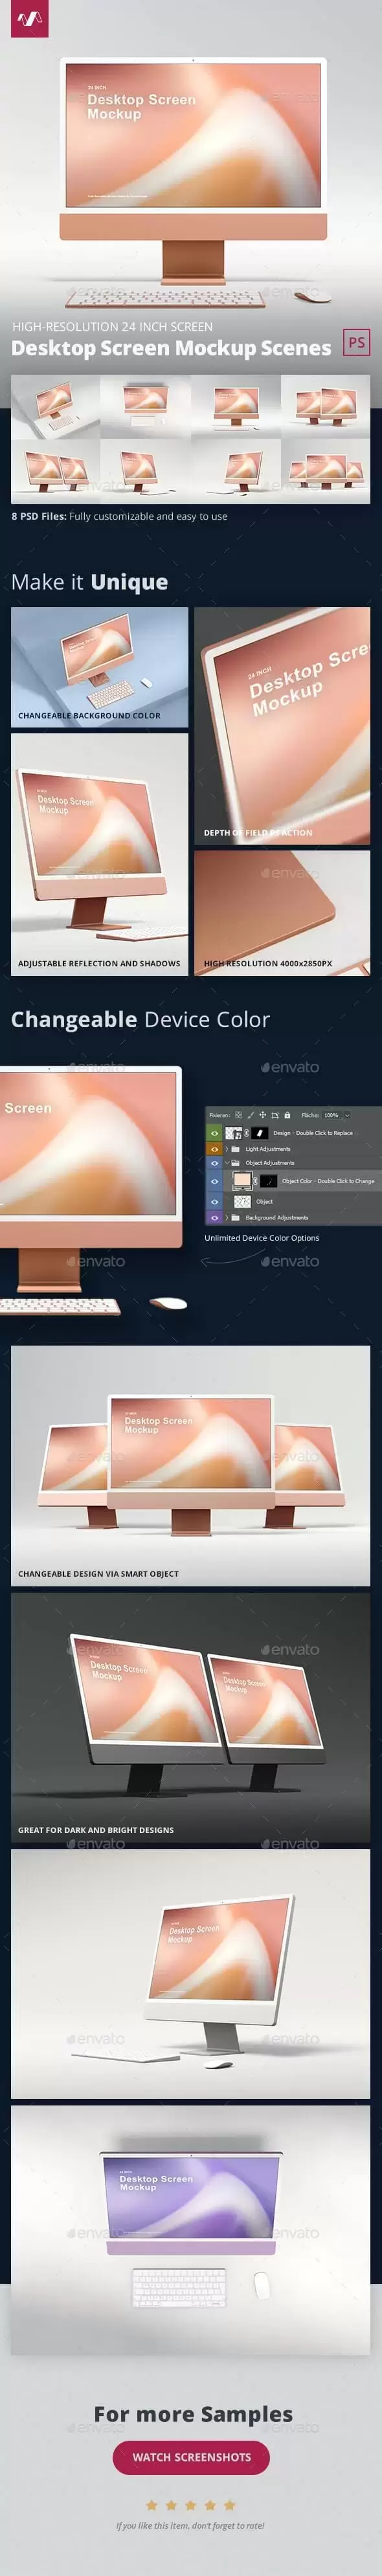 iMac电脑显示器屏幕样机场景 (psd)免费下载插图